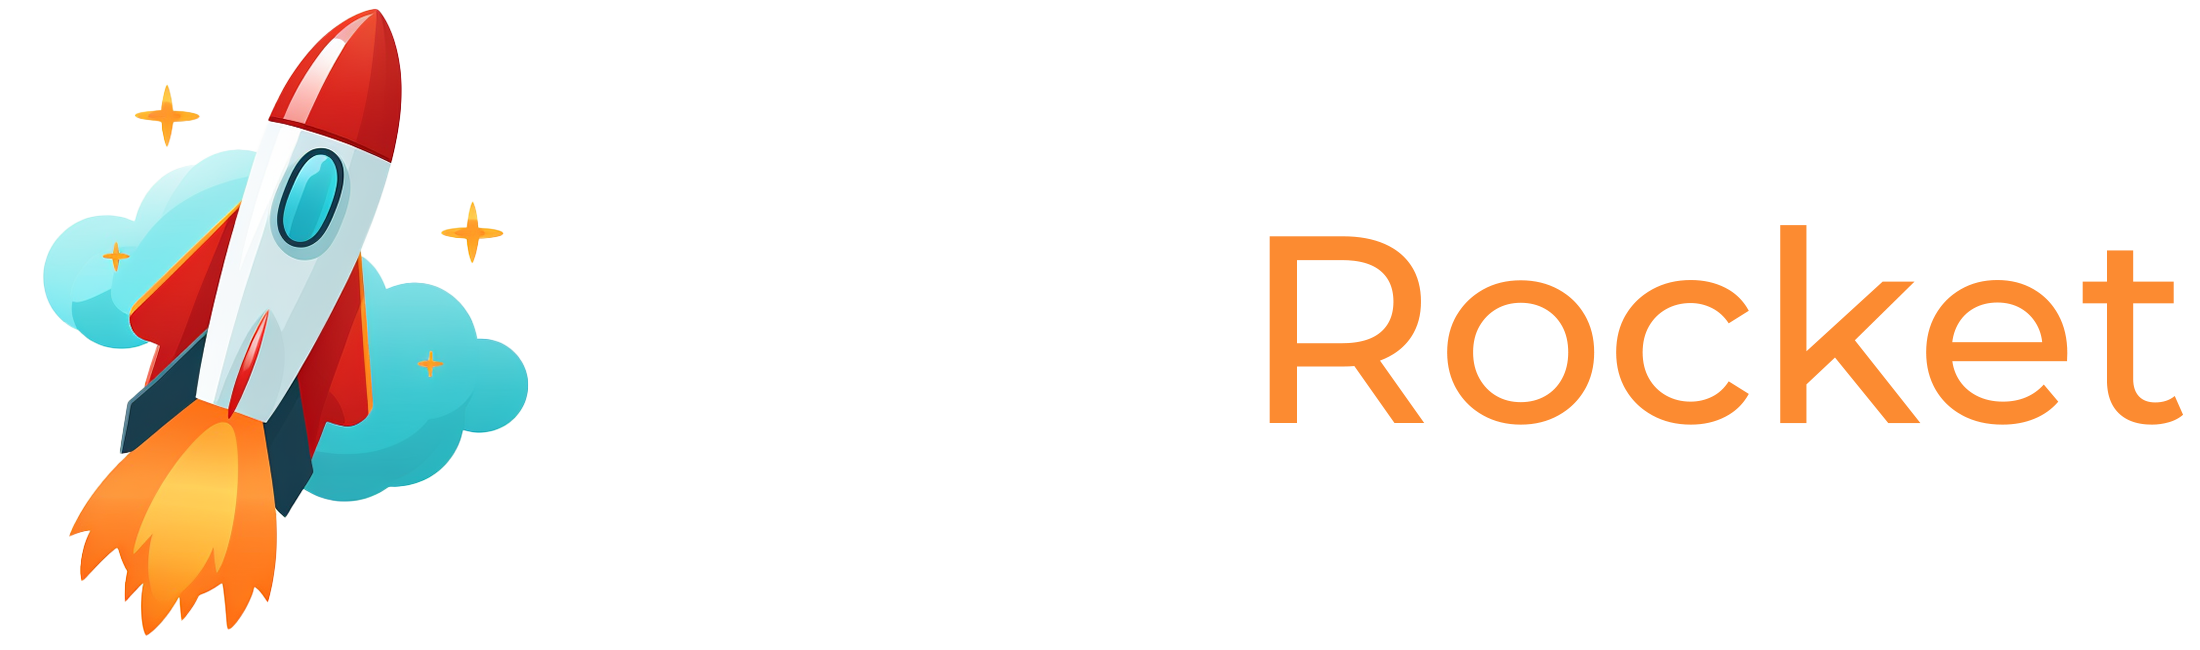 Web-Rocket-Logo-White